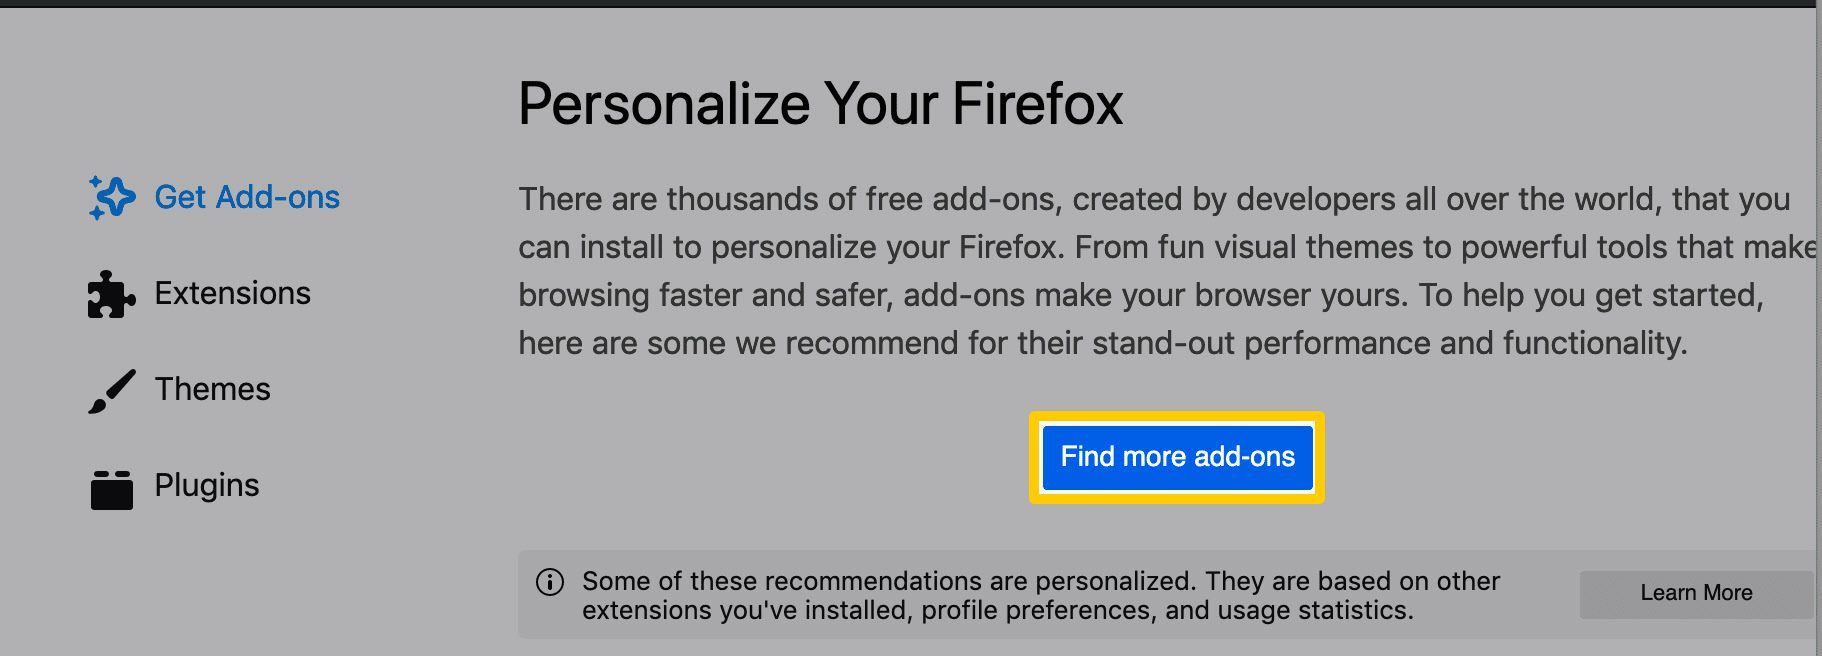 Опция «Найти больше надстроек» в браузере Firefox.